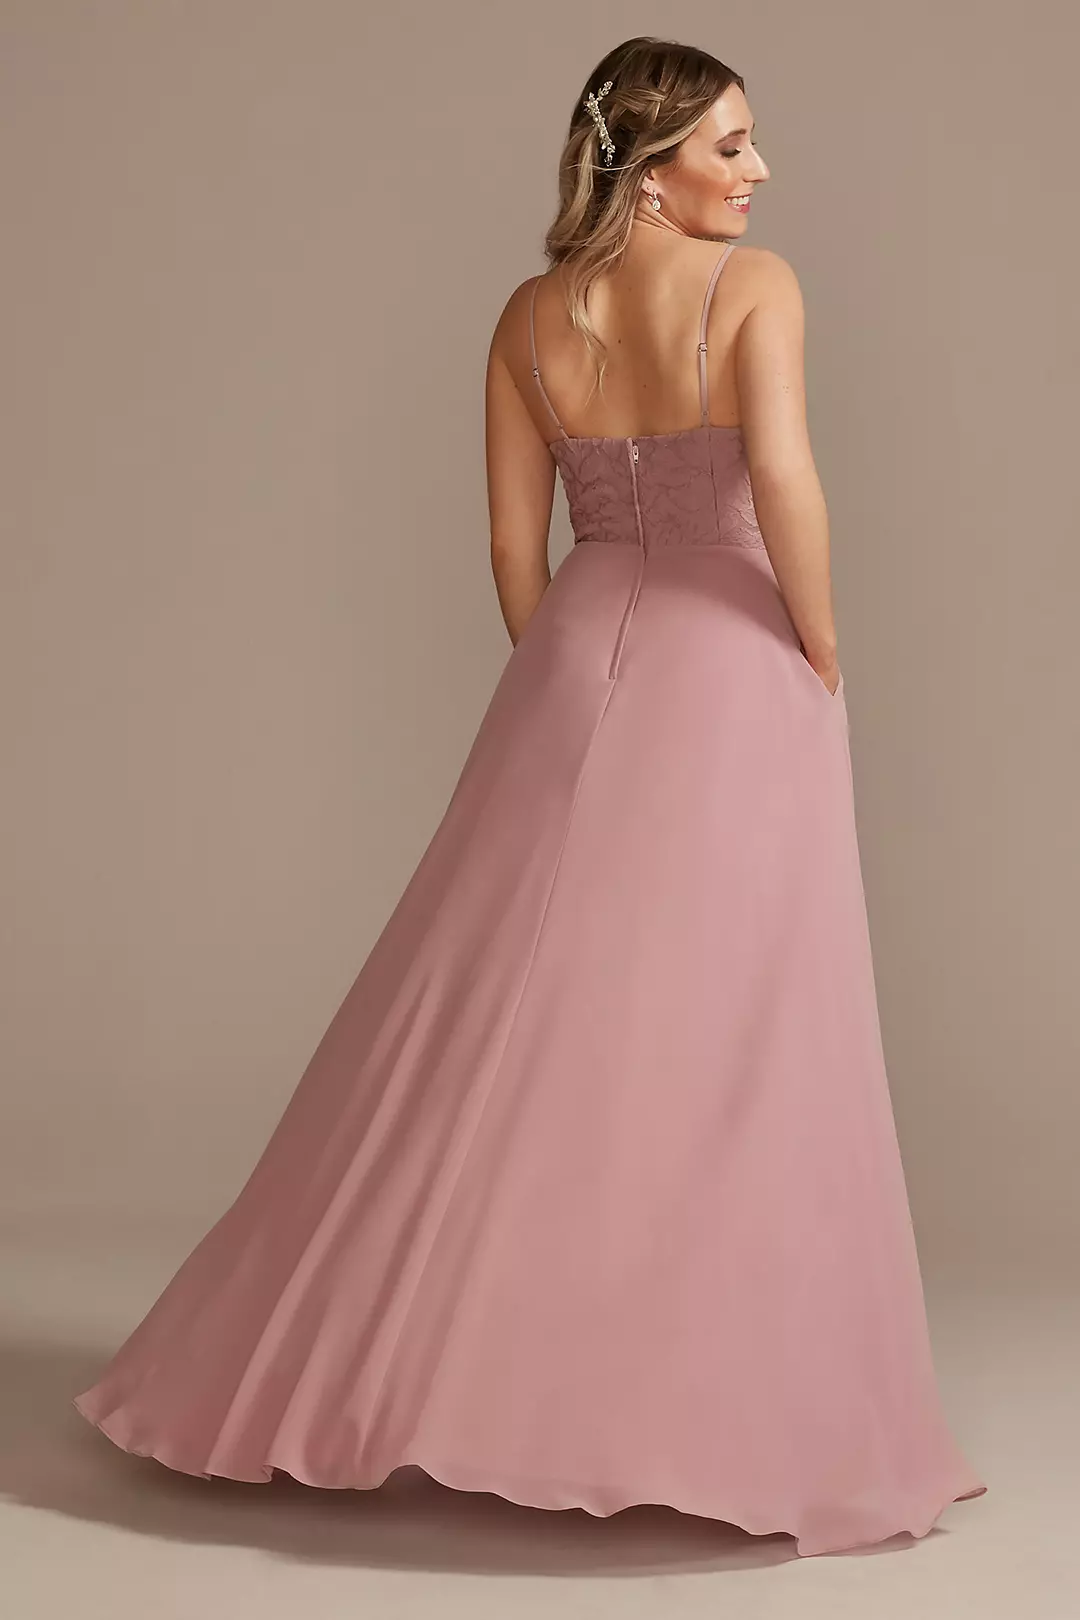 Lace Chiffon High-Low Bridesmaid Dress Image 3